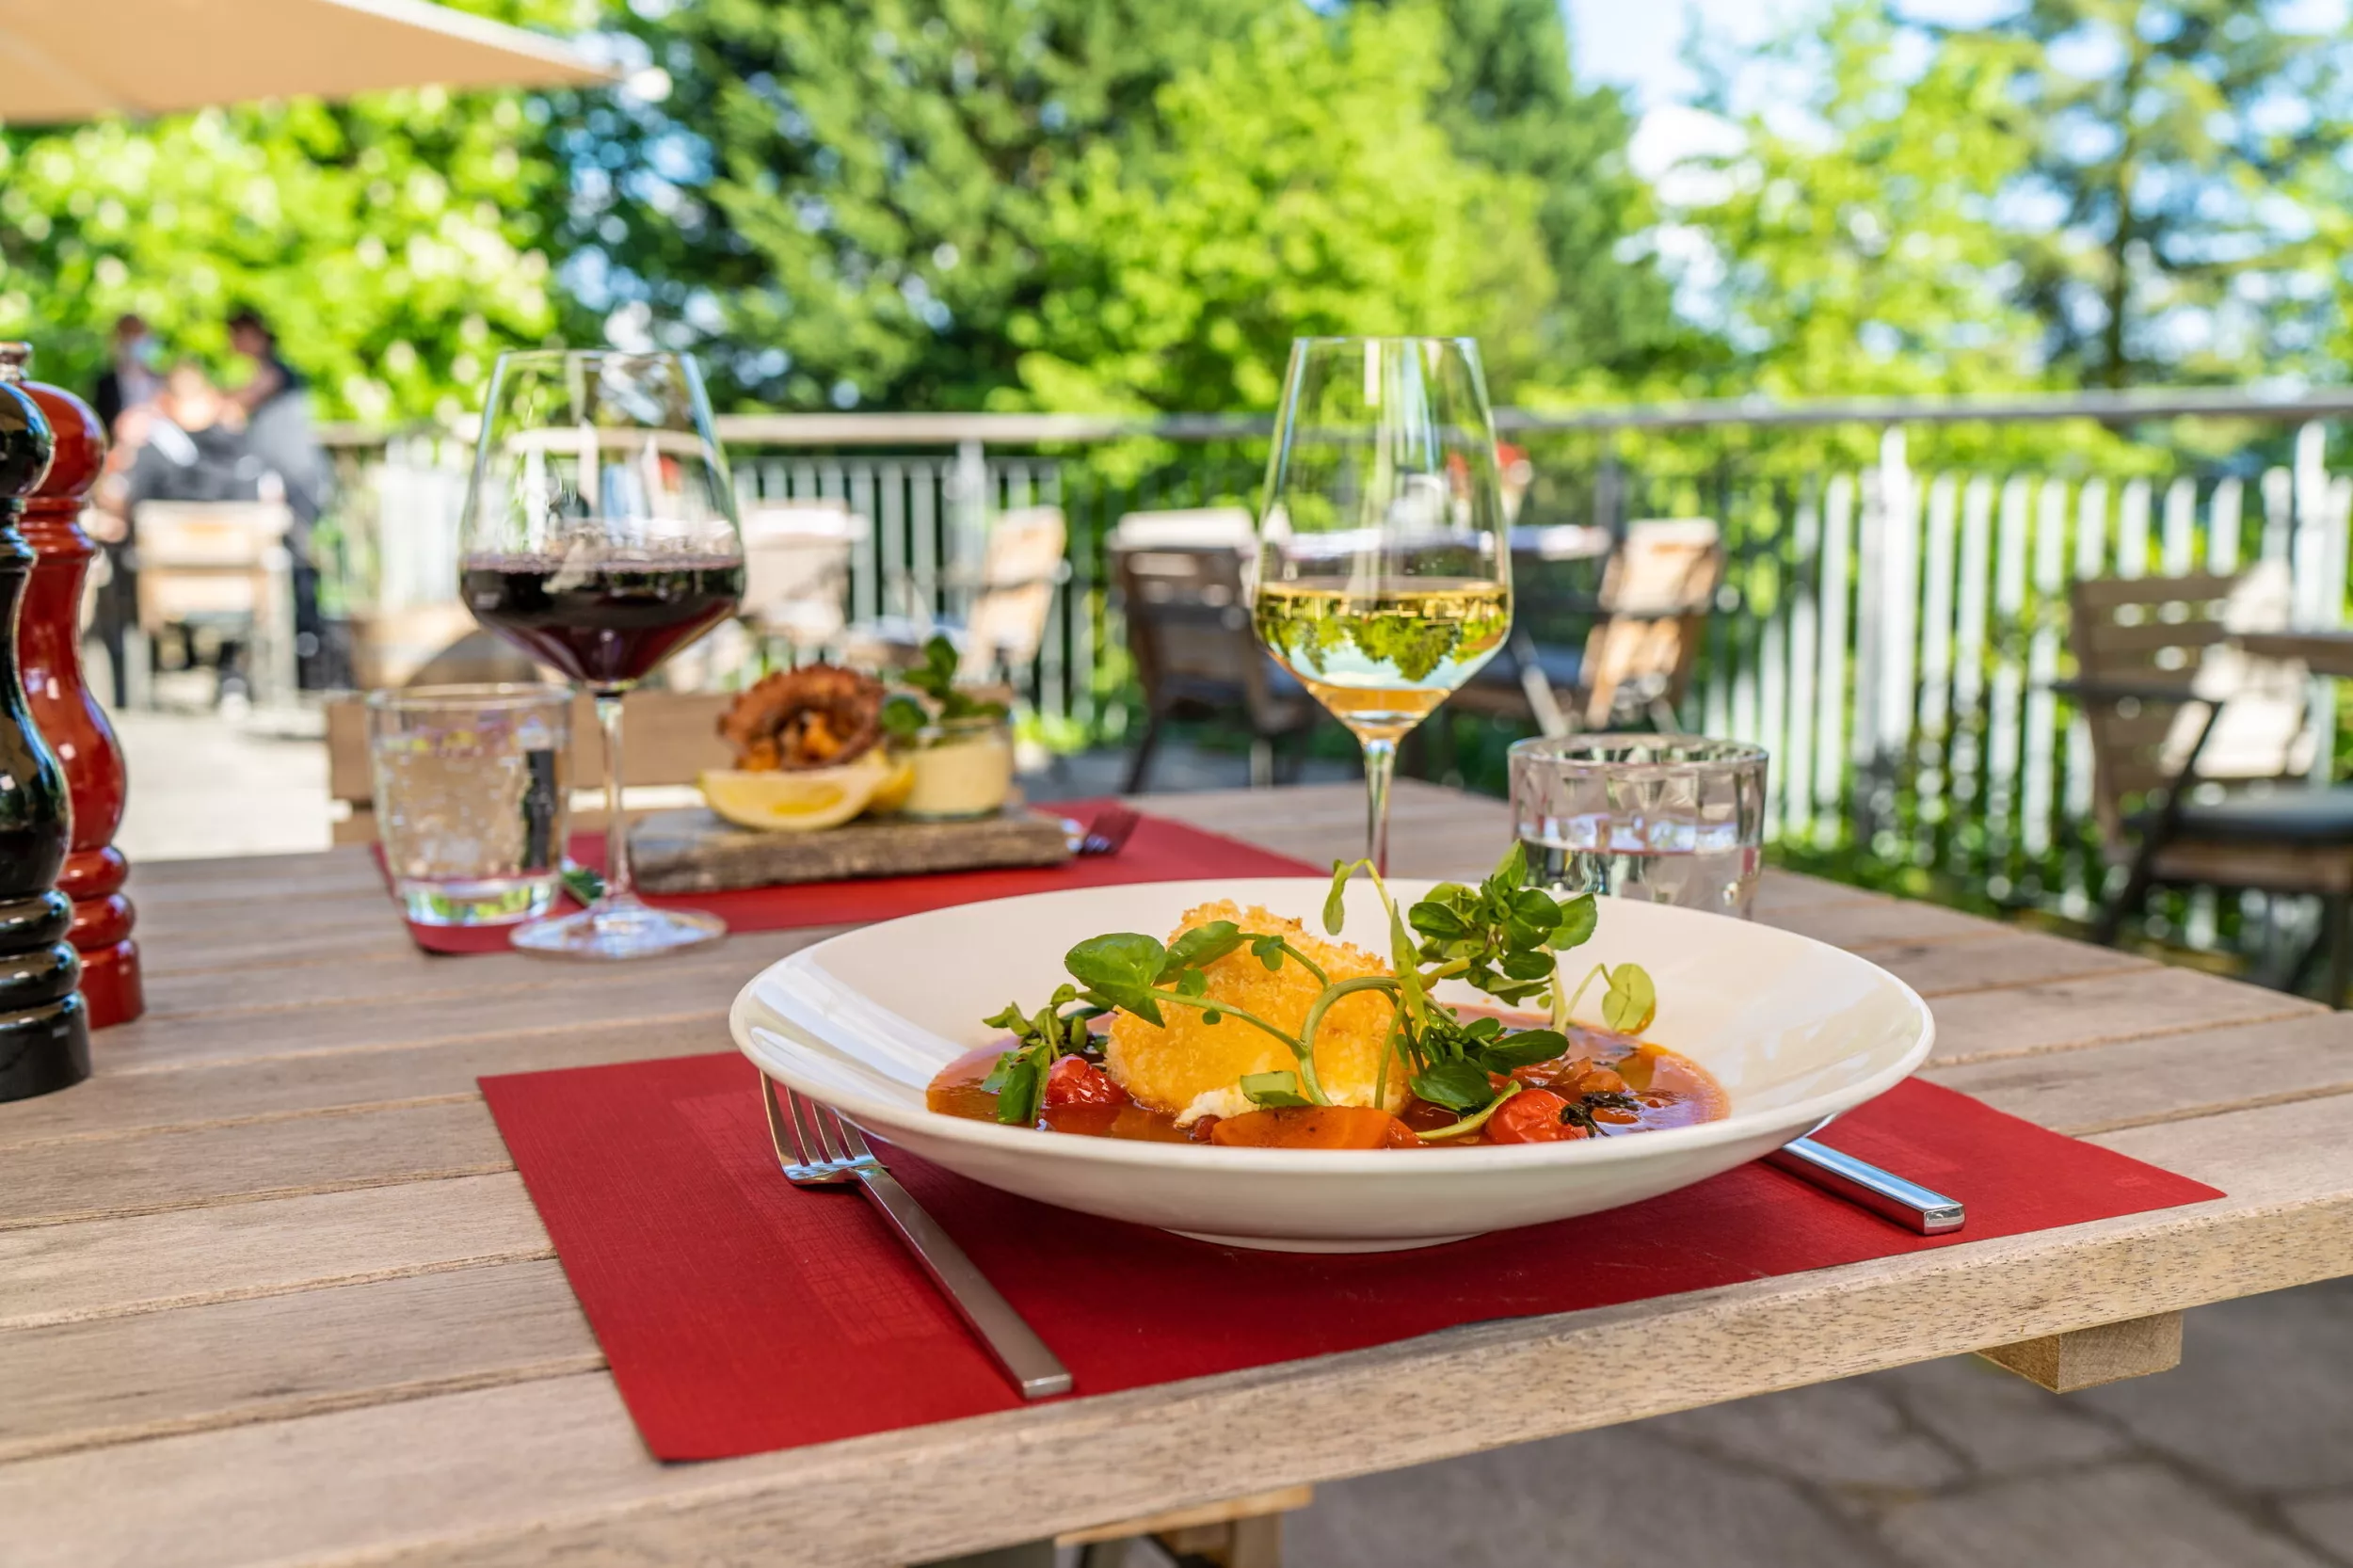 italienisches Nudelgericht auf einem gedeckten Tisch auf der Terrasse, mit Weingläsern